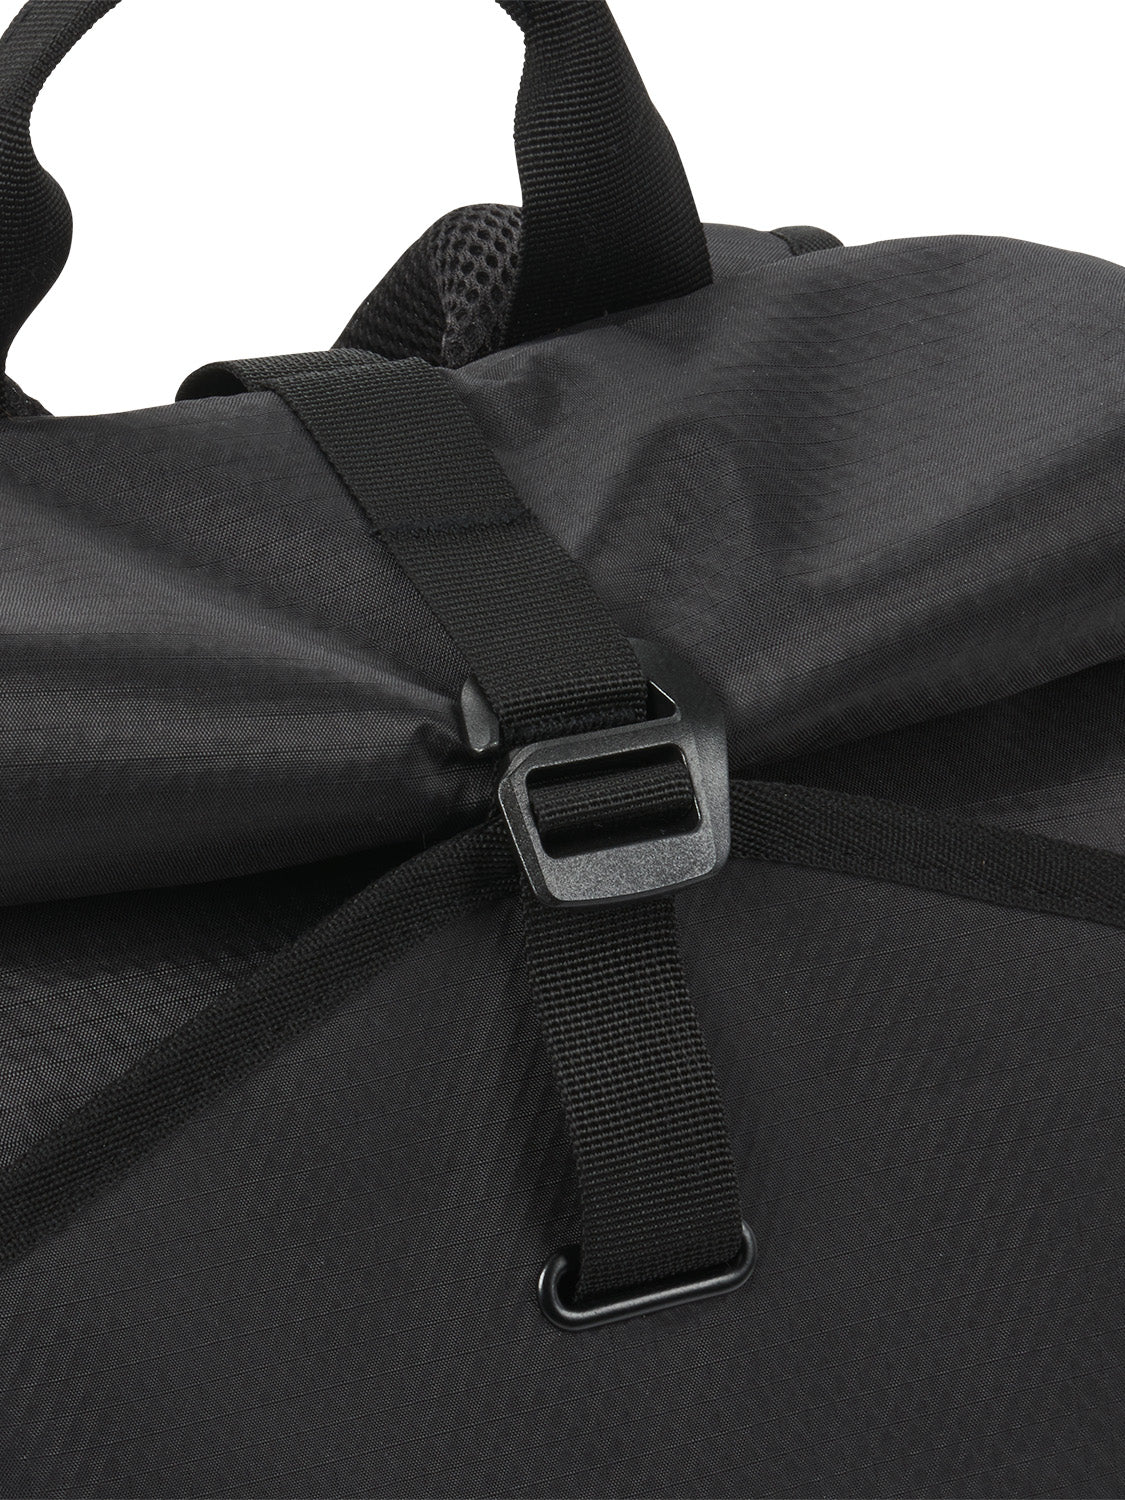 AEVOR-backpack-Rollpack-Proof-Black-detail